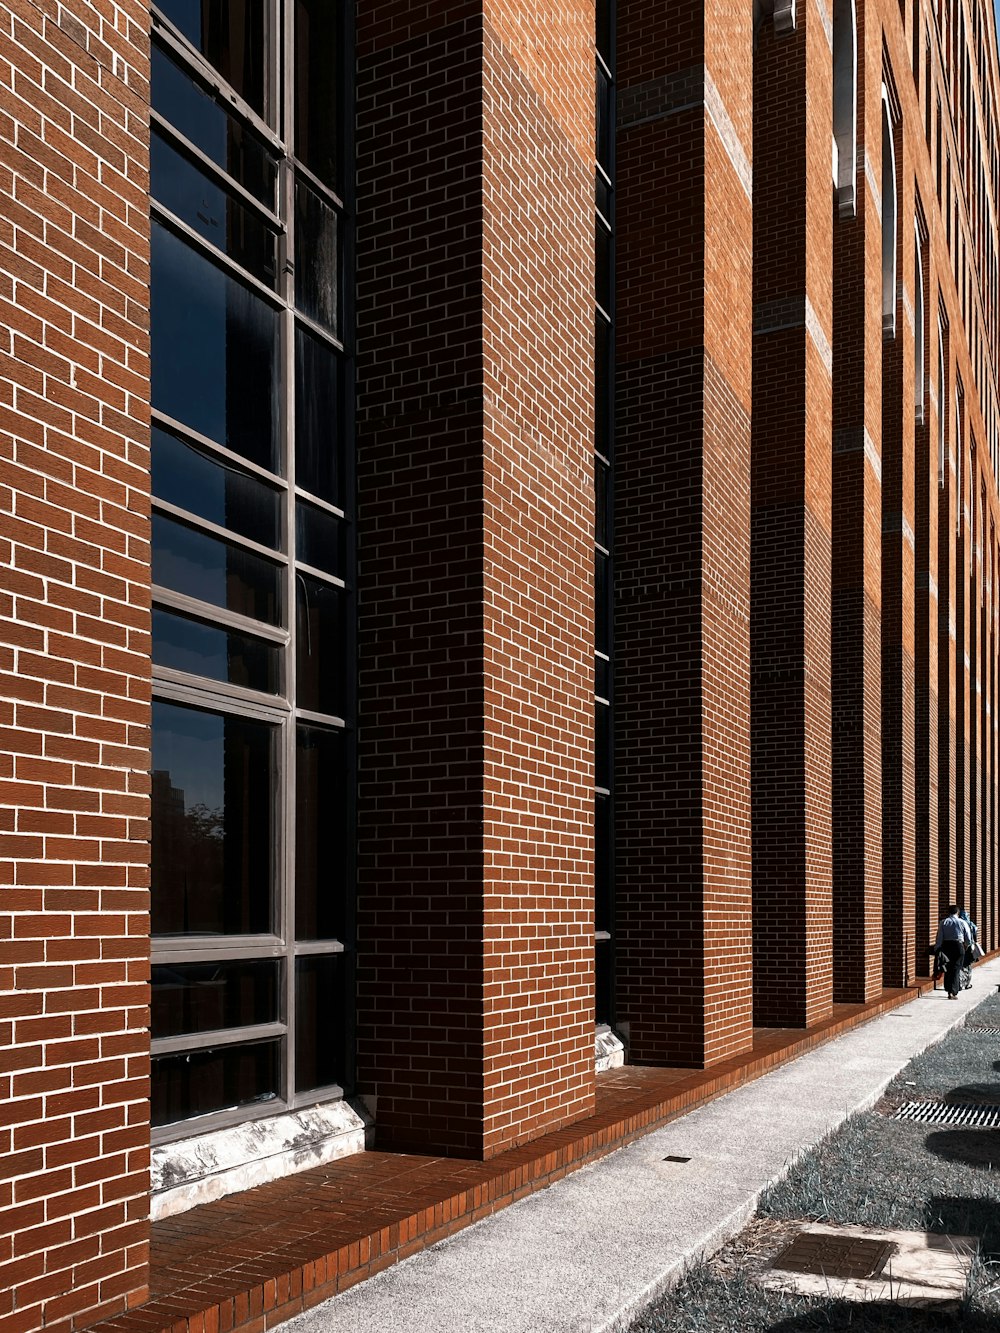 Bâtiment en brique brune avec fenêtres en verre